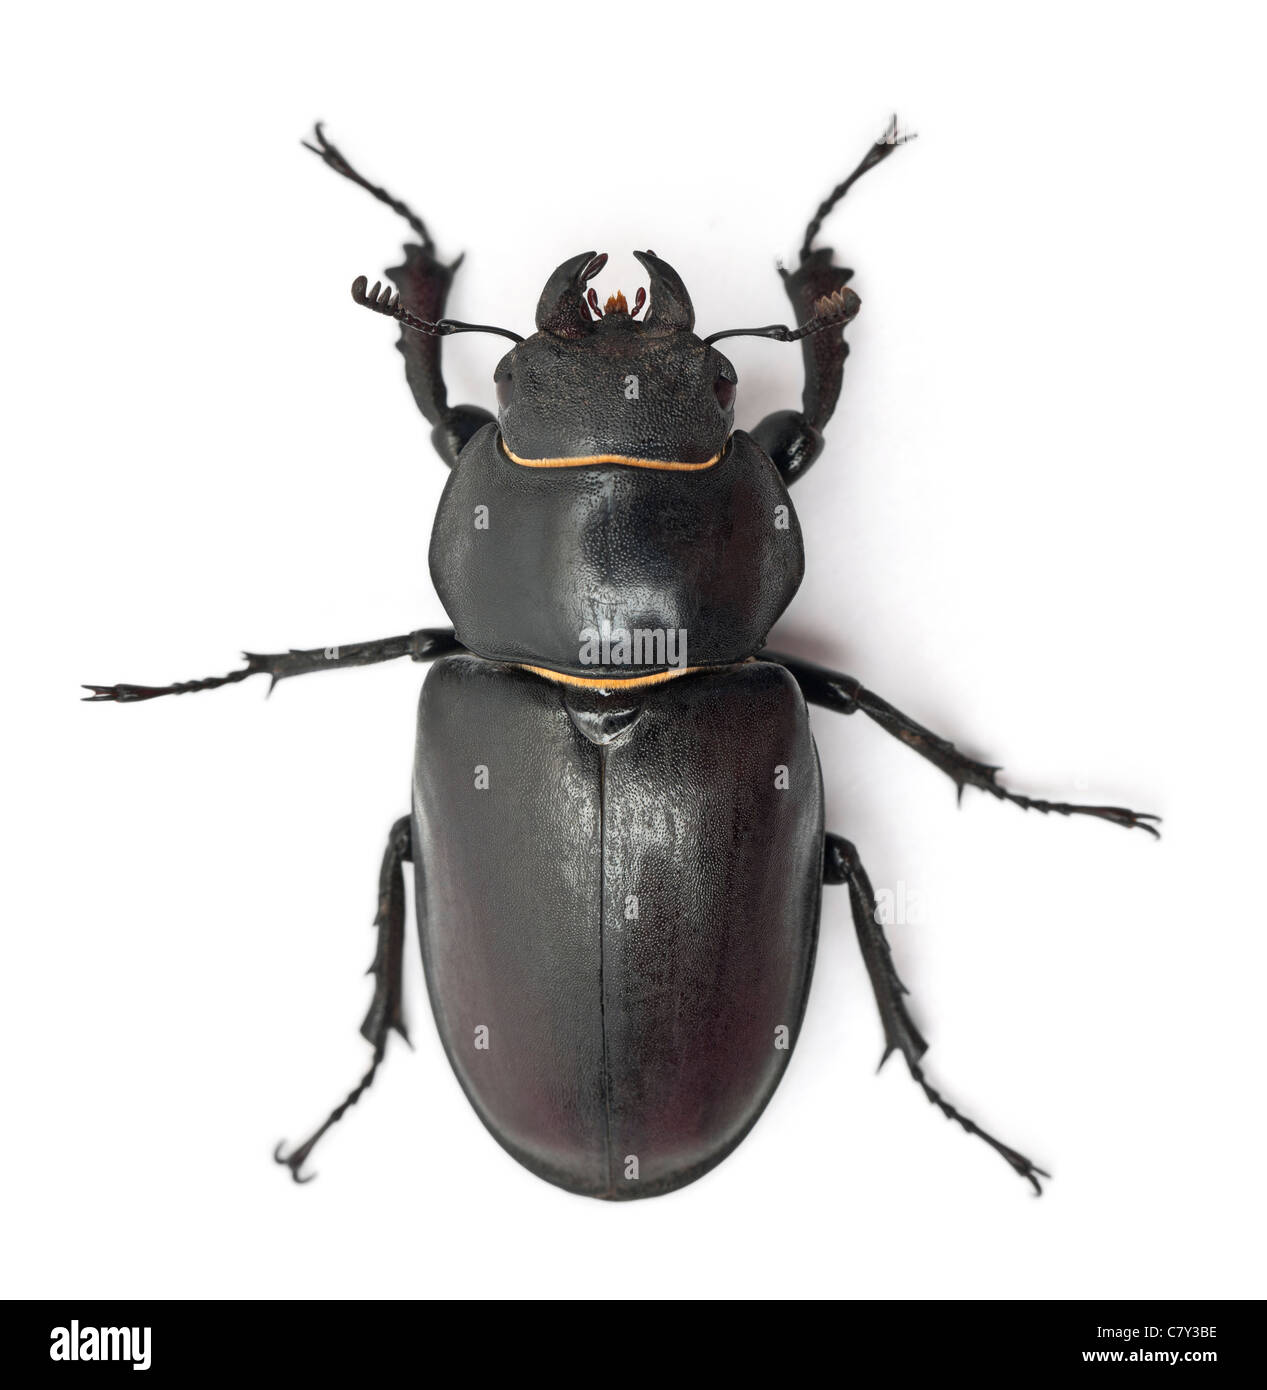 Femmina Lucanus cervus, una specie di stag beetle, di fronte a uno sfondo bianco Foto Stock